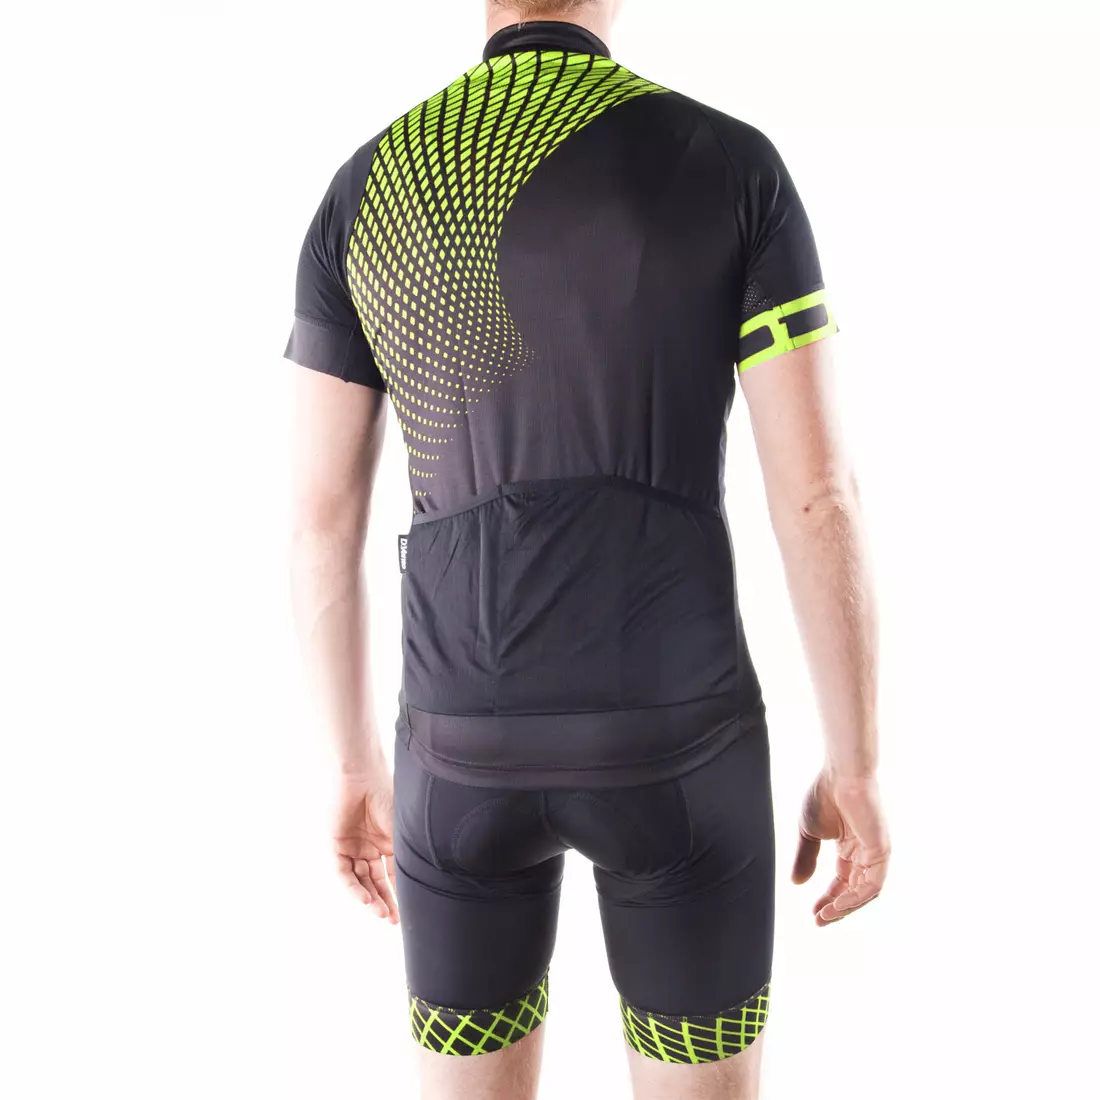 DEKO SET2 men's cycling jersey black fluor green